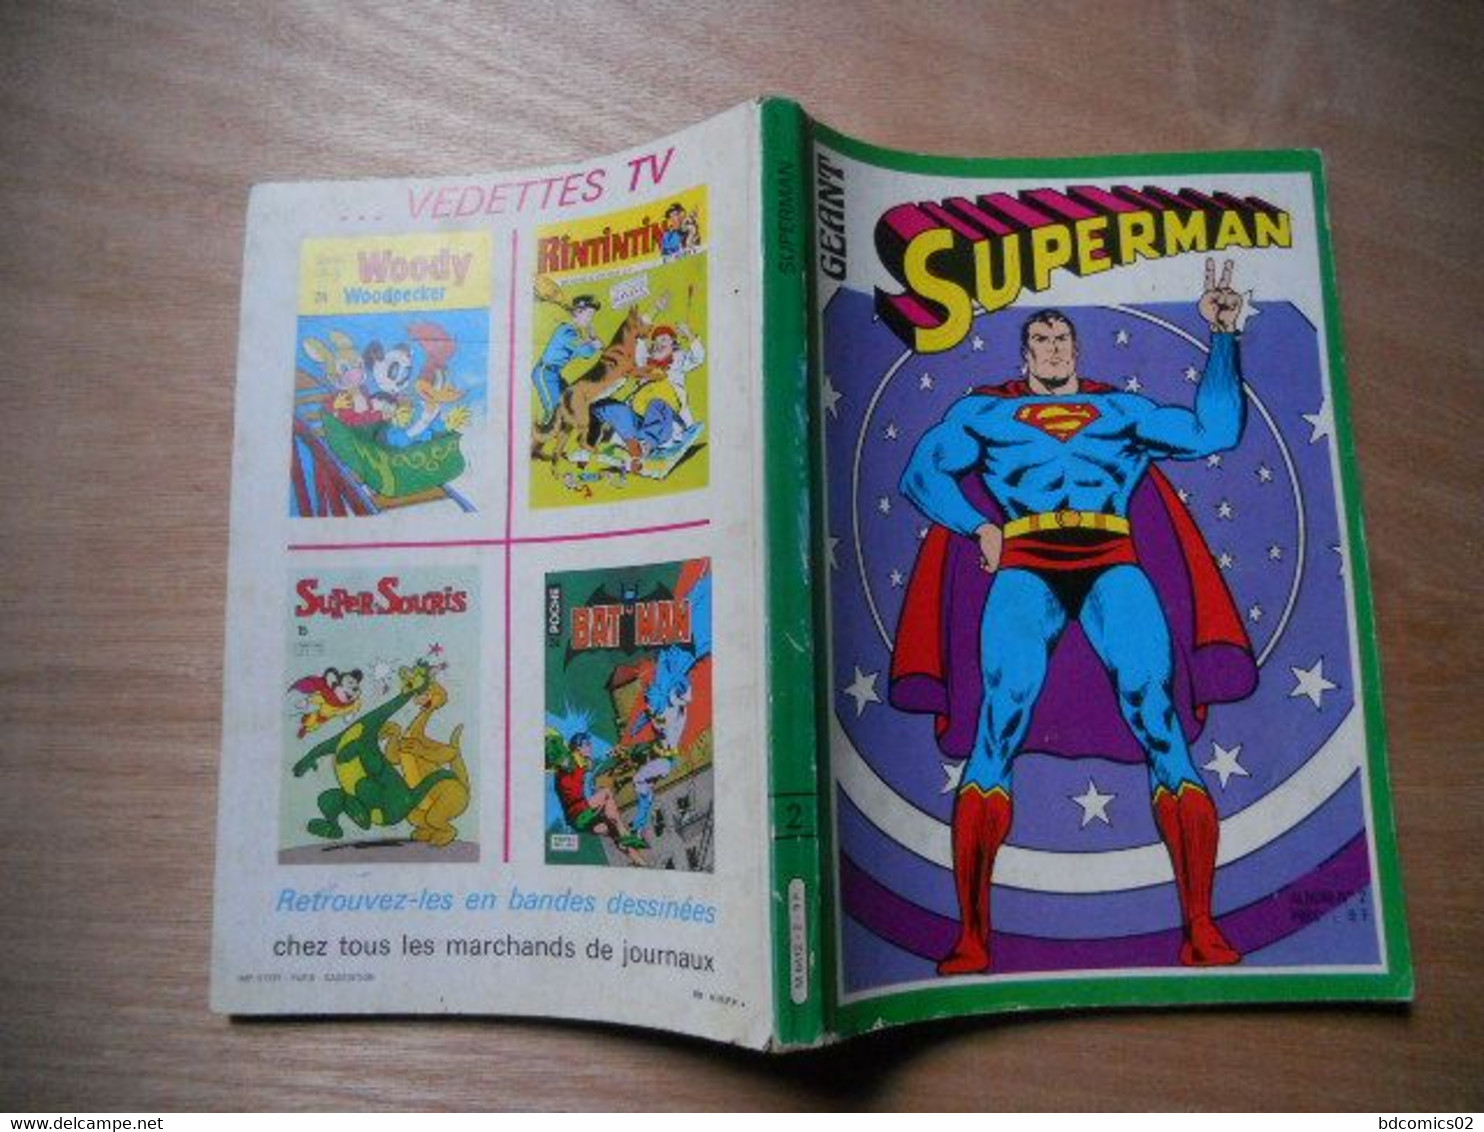 Superman Geant Album Reliee N°2 Avec Les N° 4/5/6 Sagedition 1979 - Superman